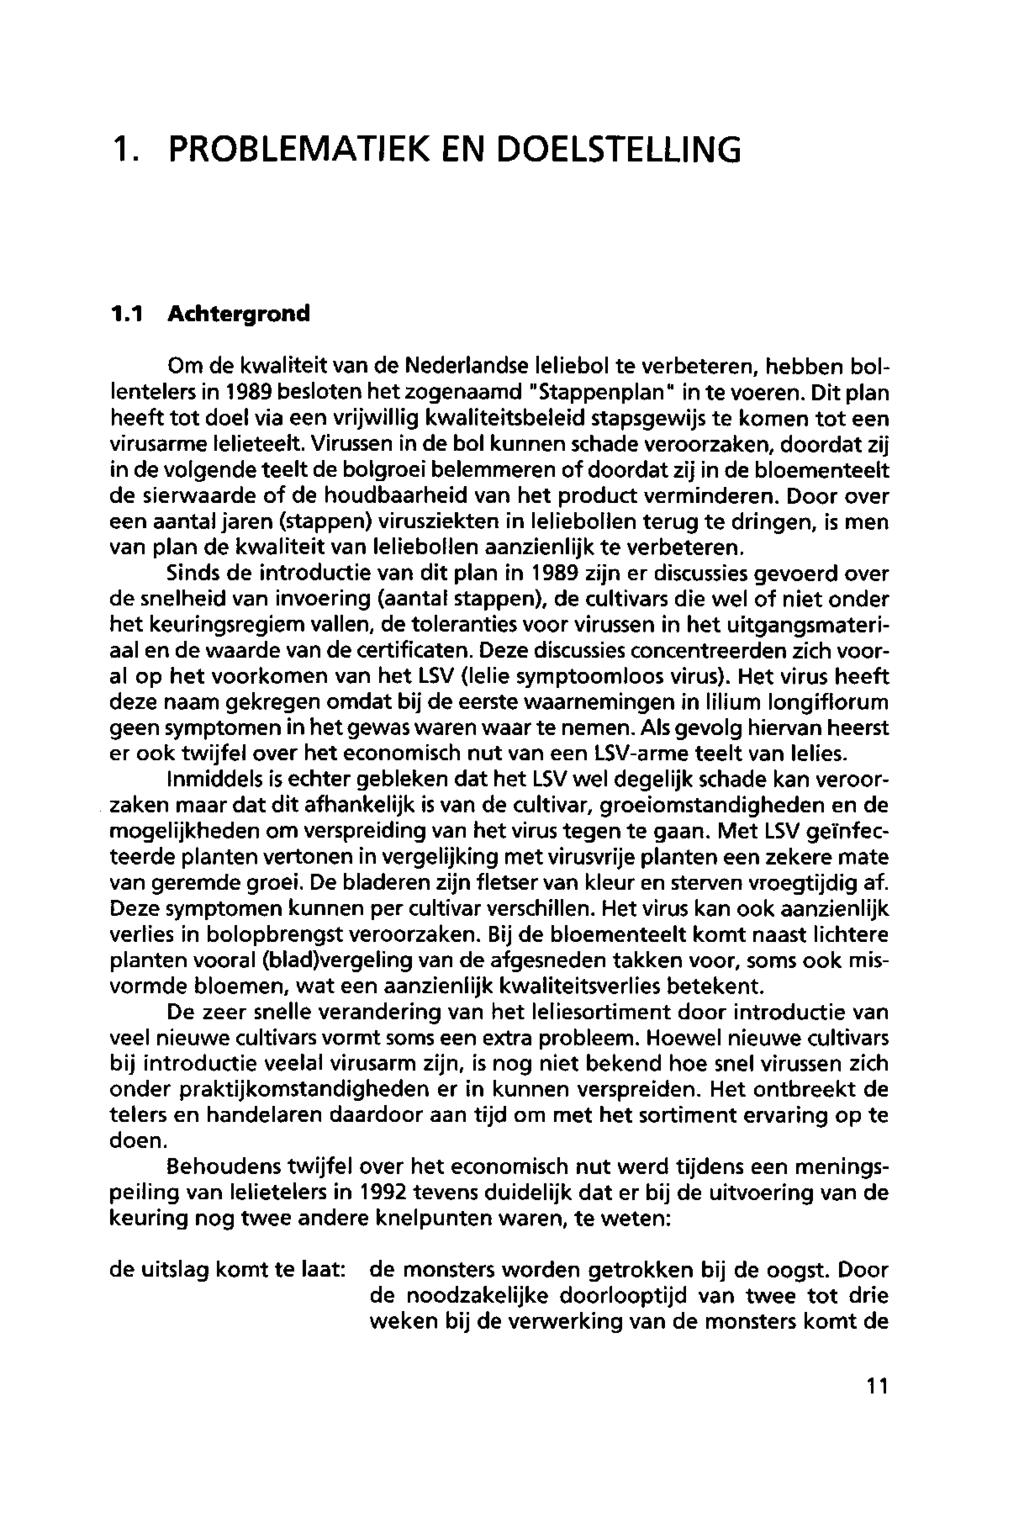 1. PROBLEMATIEK ENDOELSTELLING 1.1 Achtergrond Om de kwaliteitvan de Nederlandse leliebol te verbeteren, hebben bollentelers in 1989 besloten het zogenaamd "Stappenplan" in te voeren.